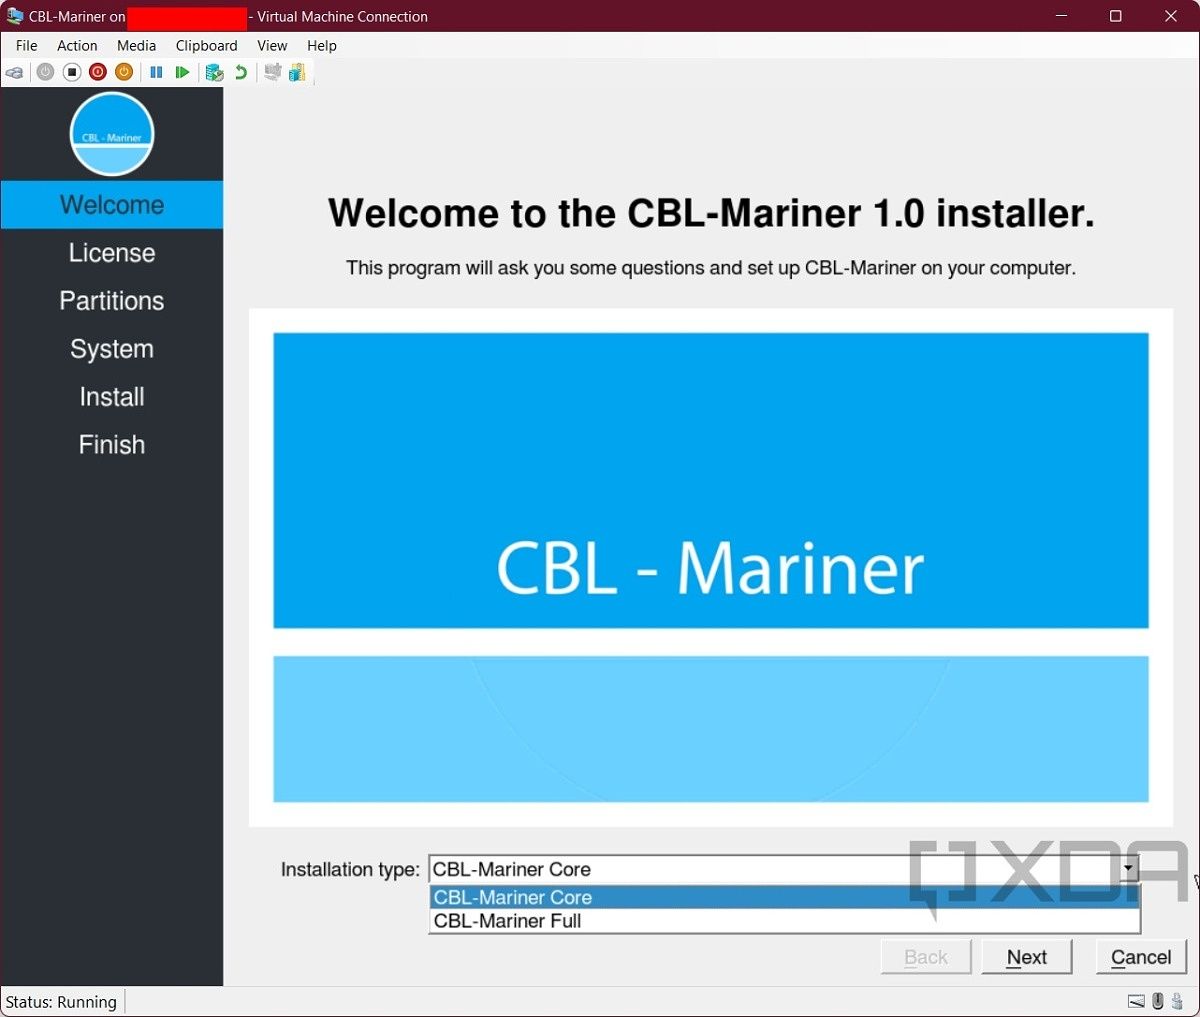 CBL-Mariner Hyper-V VM installation type